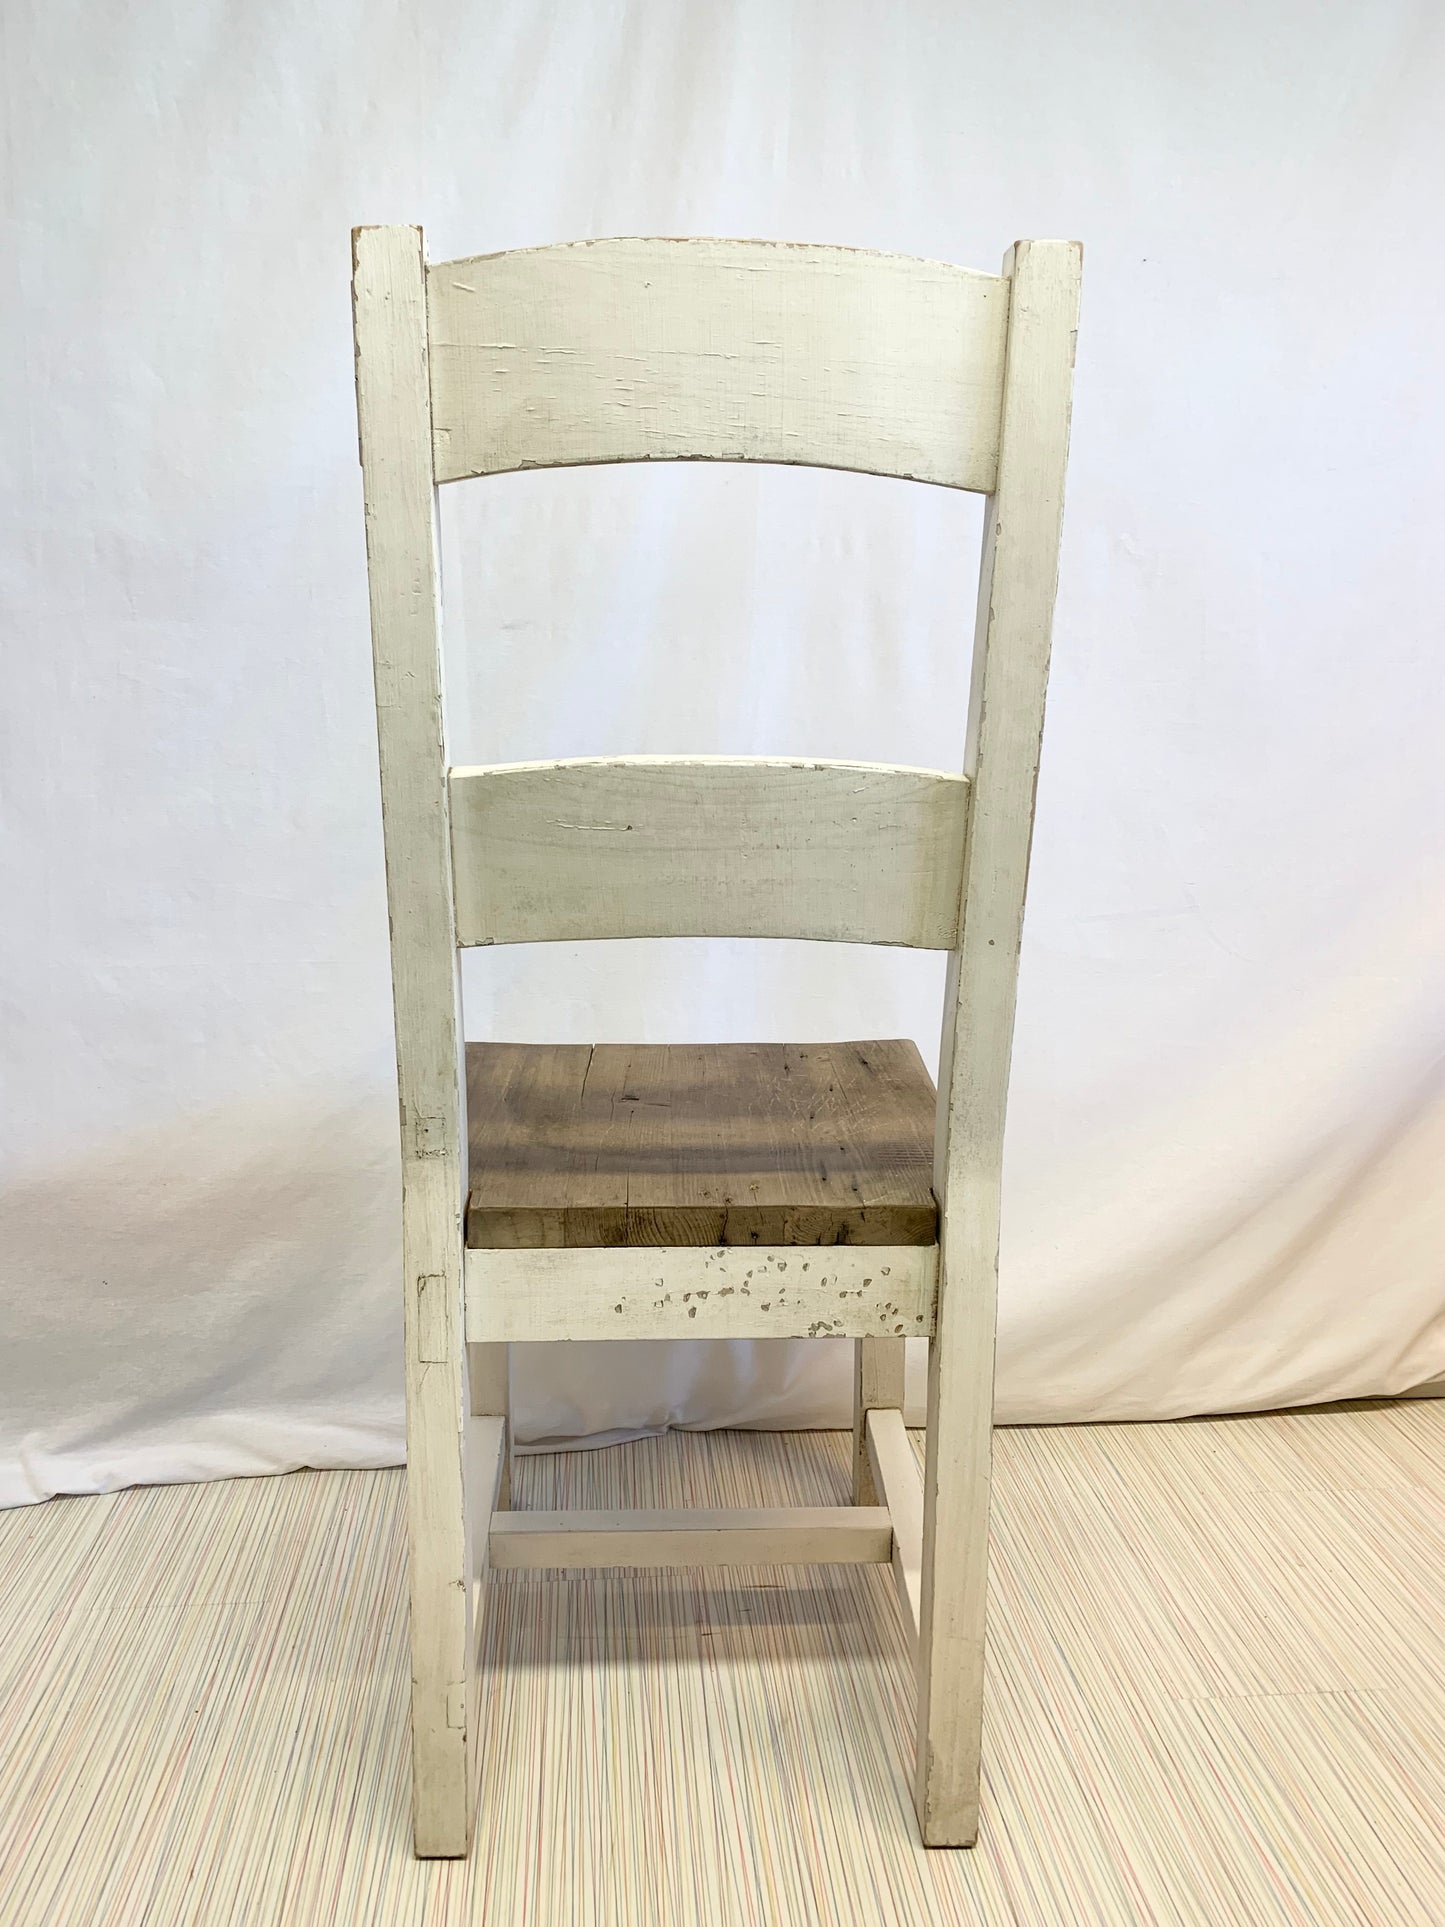 Kierrätyspuusta valmistettu tuoli